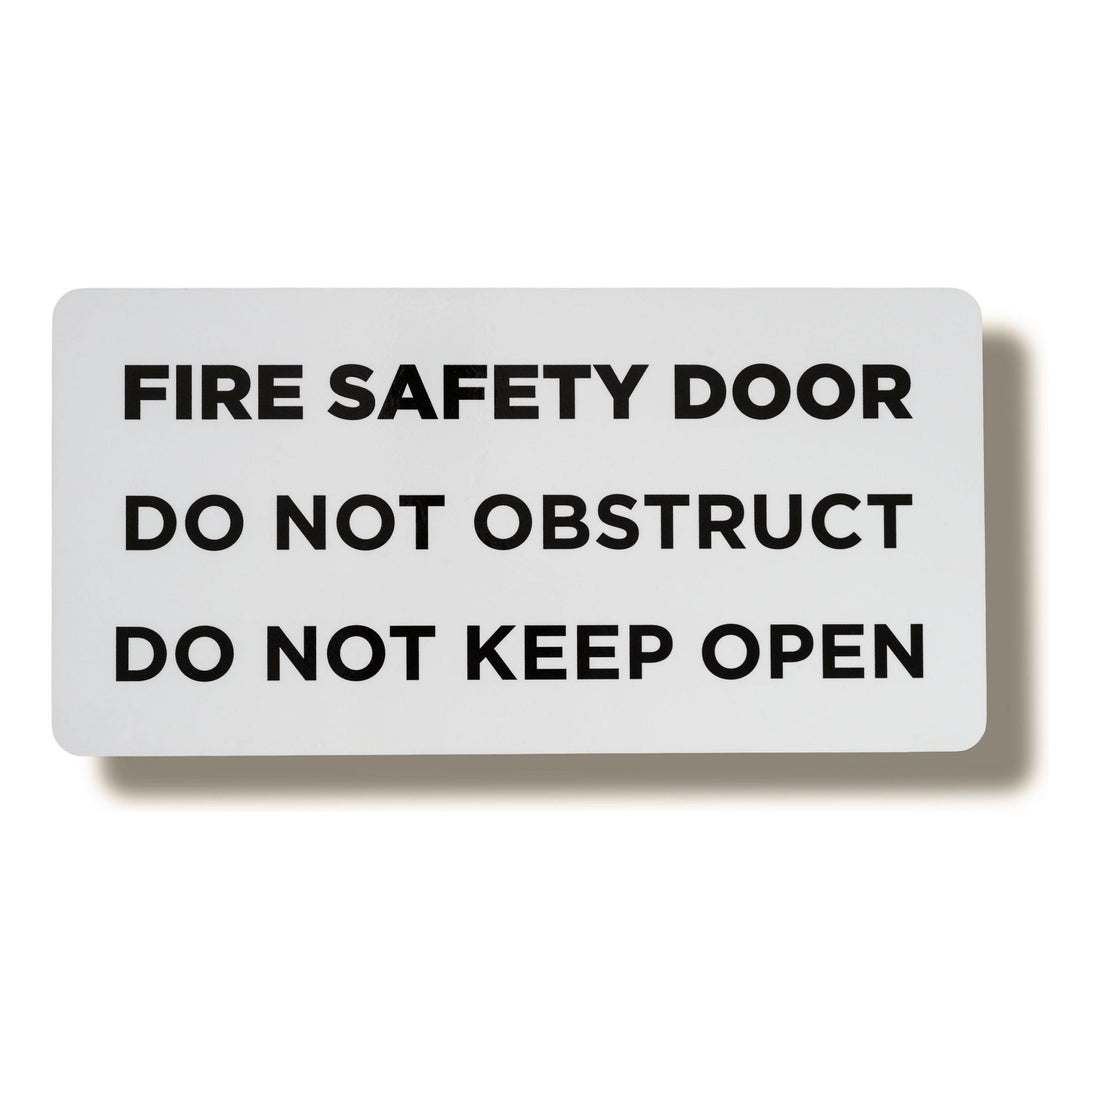 fire safety door